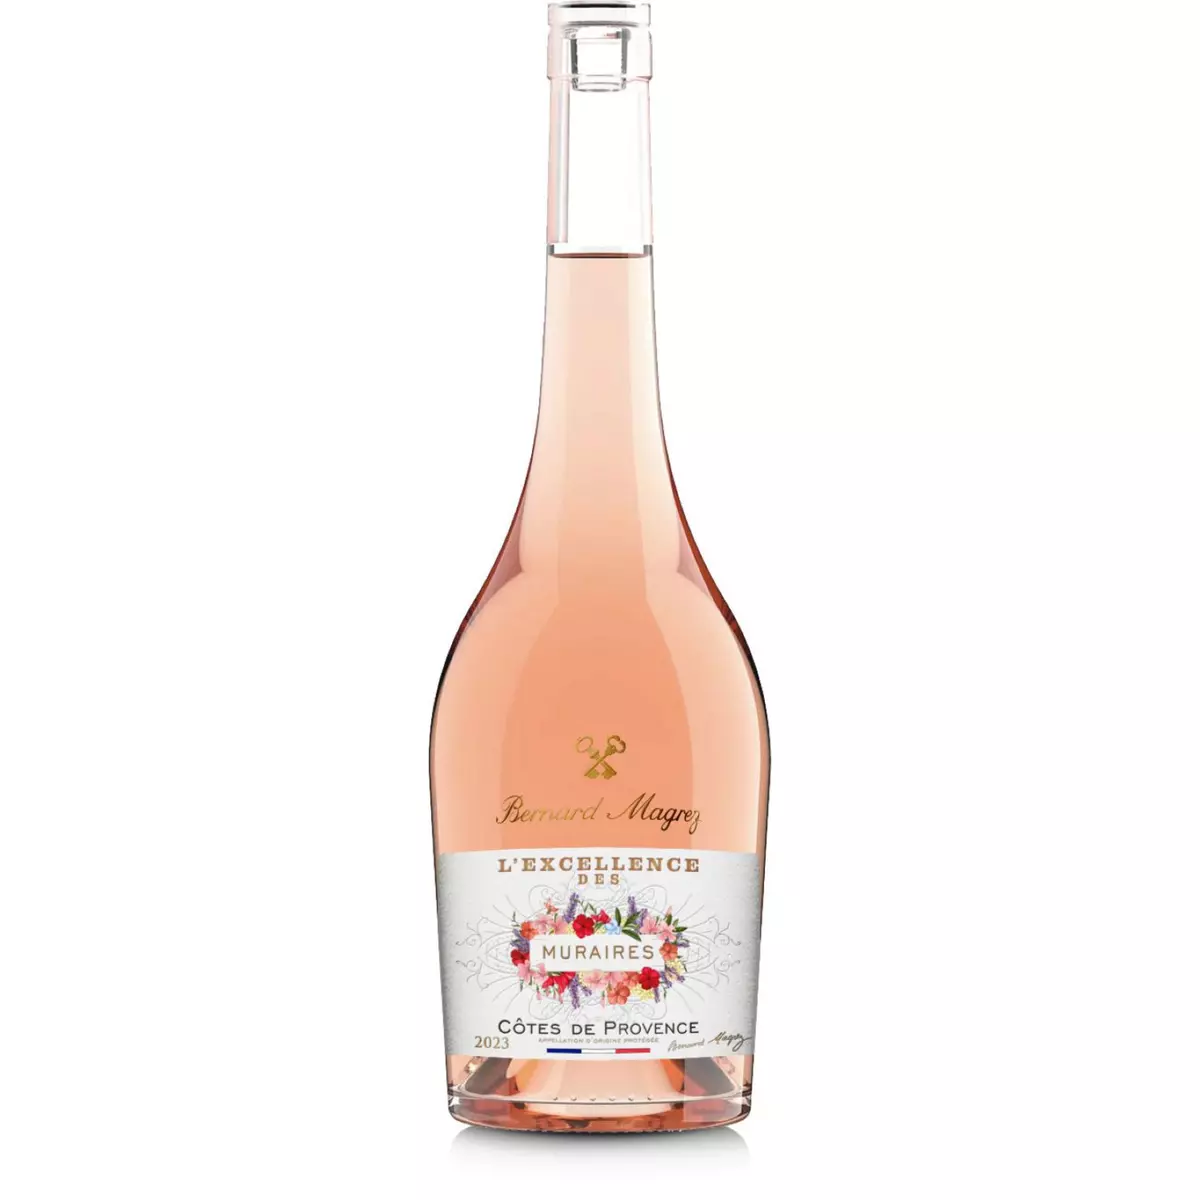 BERNARD MAGREZ AOP Côtes-de-Provence l'Excellence des Muraires rosé 2021 75cl